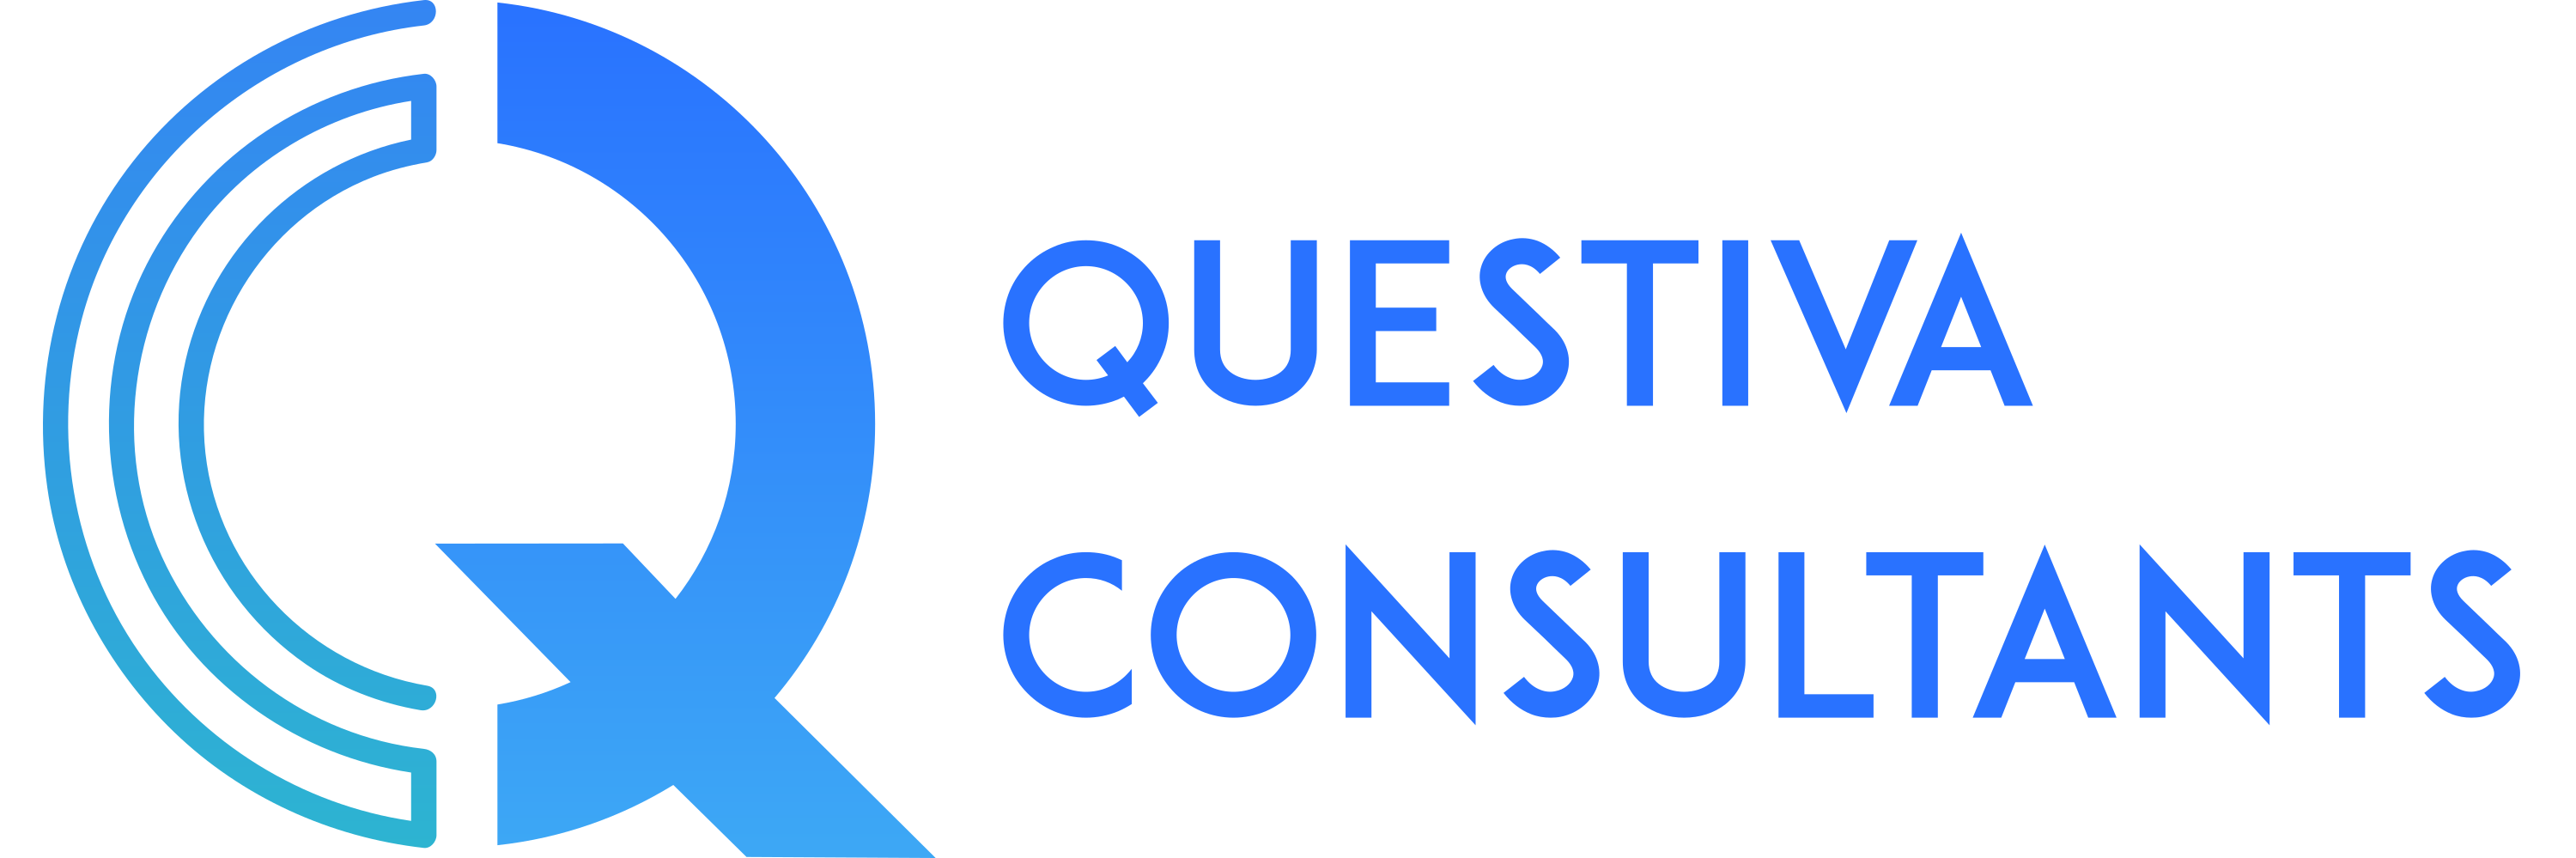 Questiva Consultants Logo